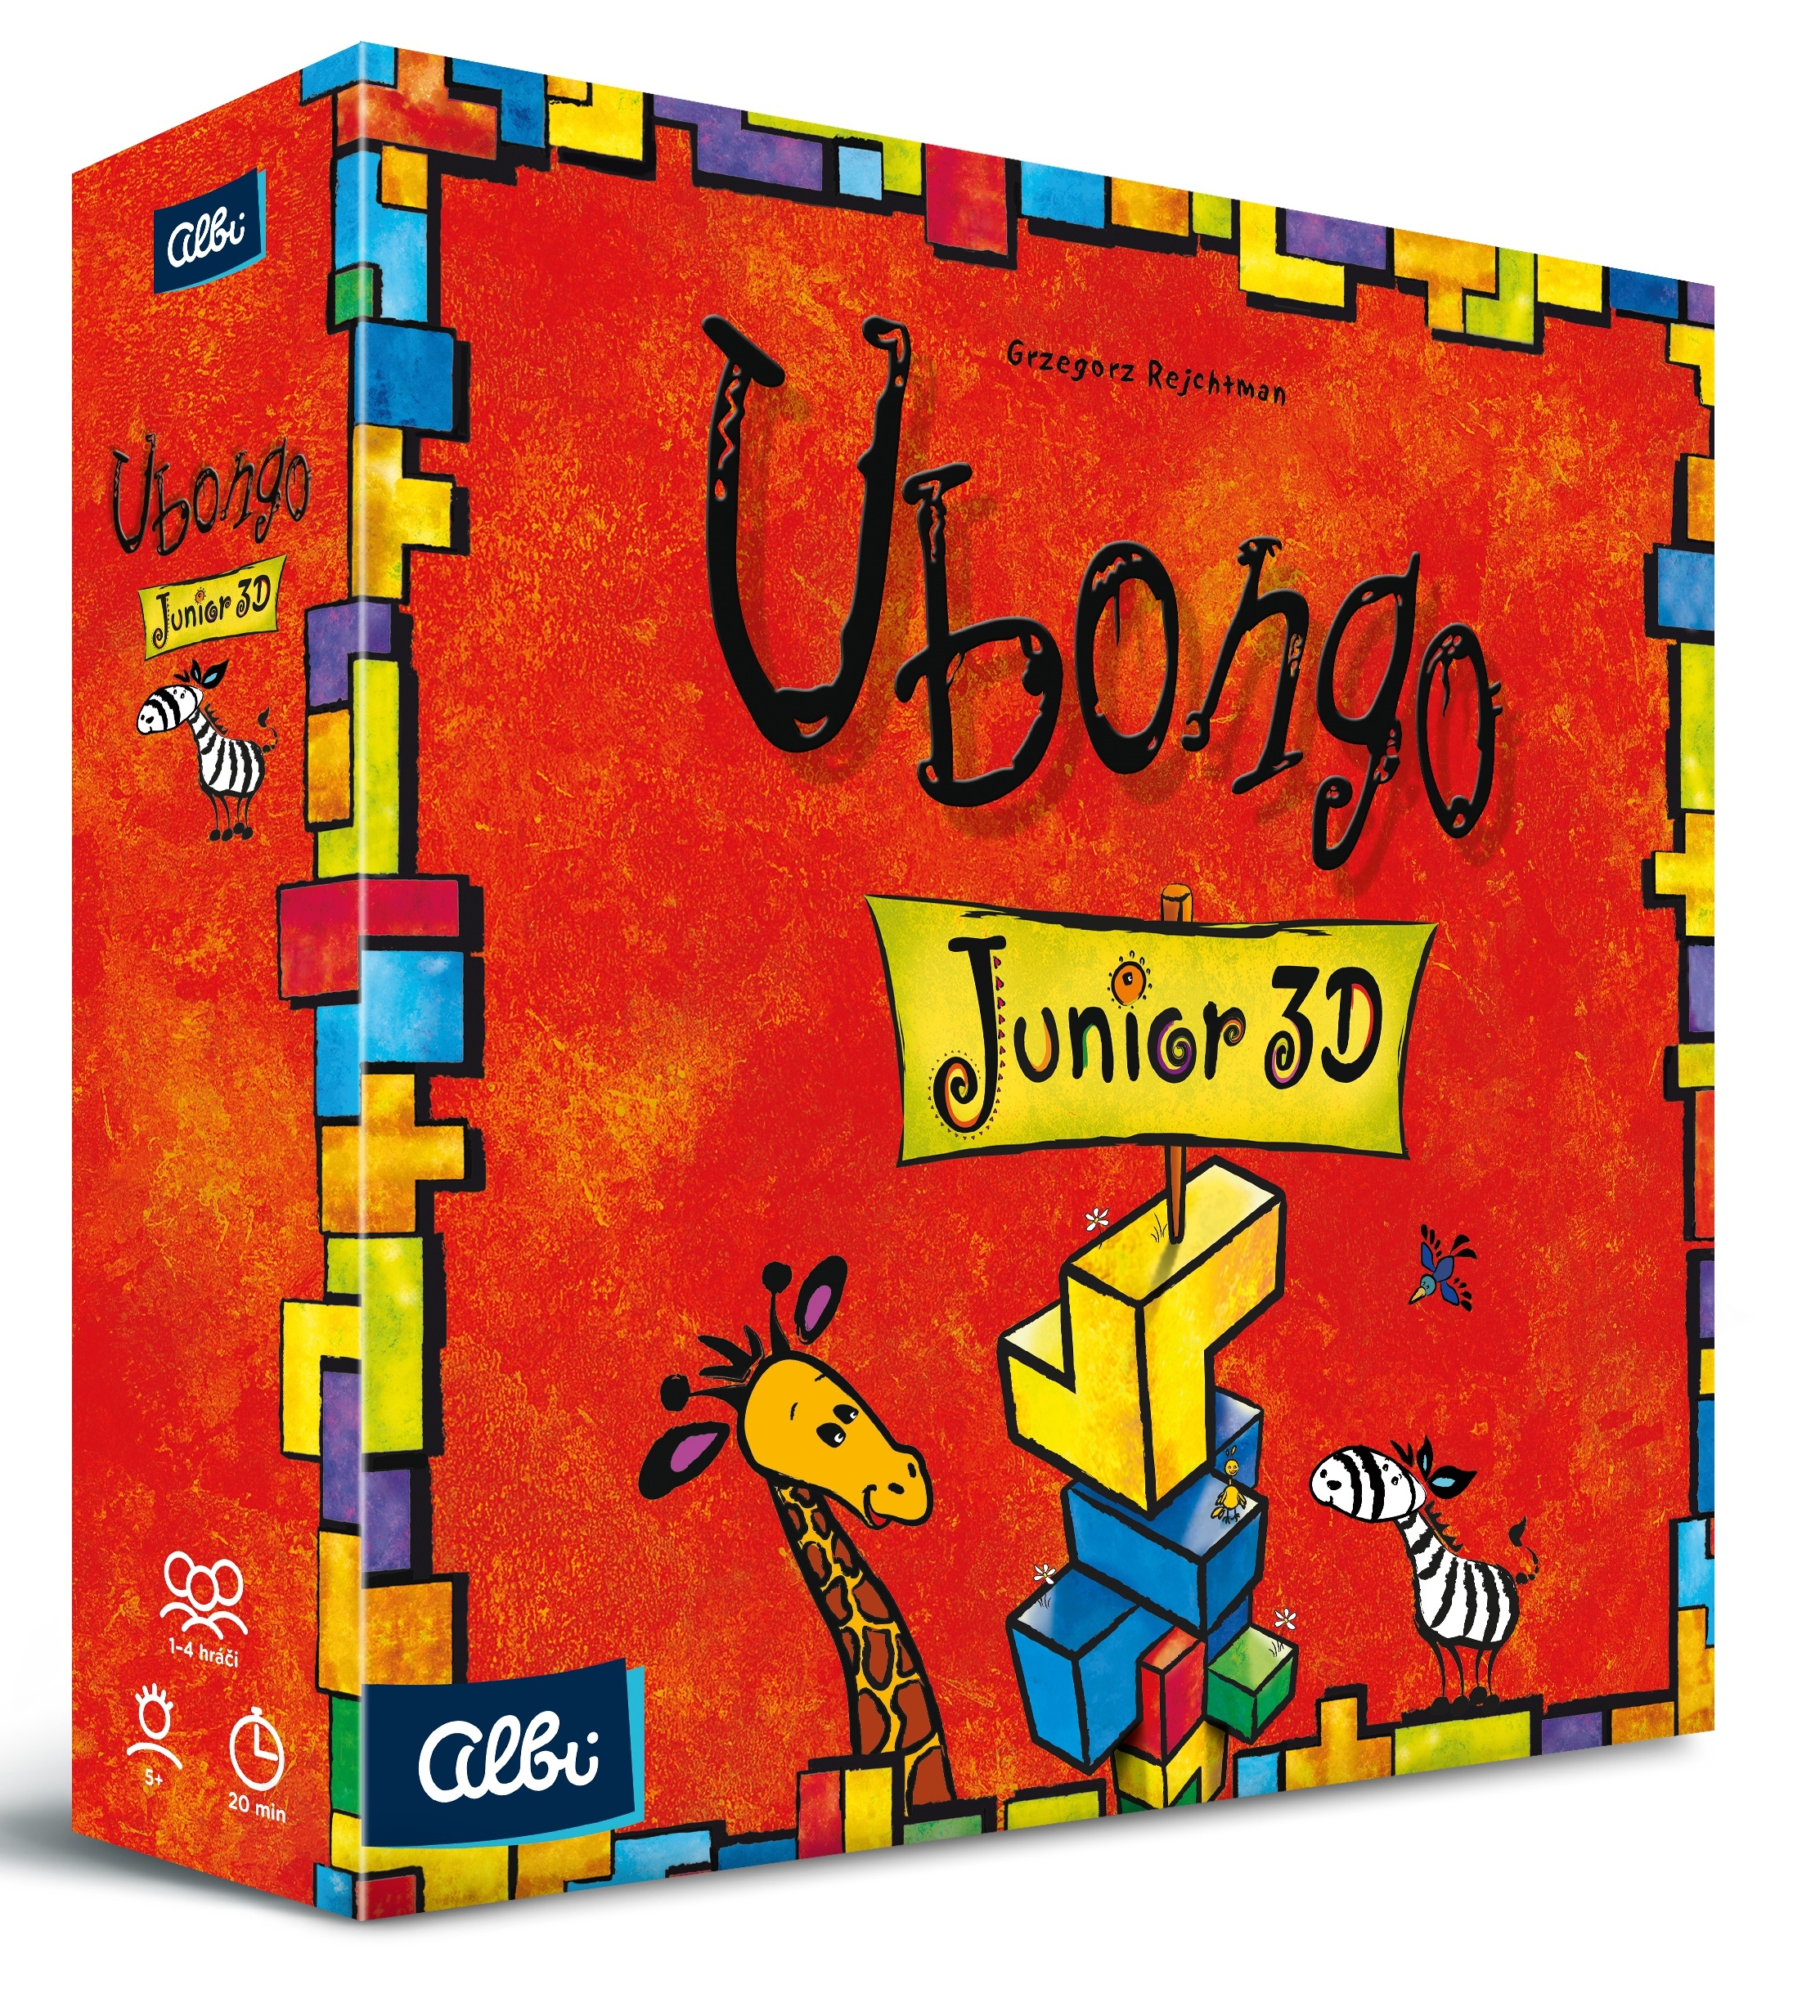 Desková hra Ubongo Junior 3D - Druhé vydání